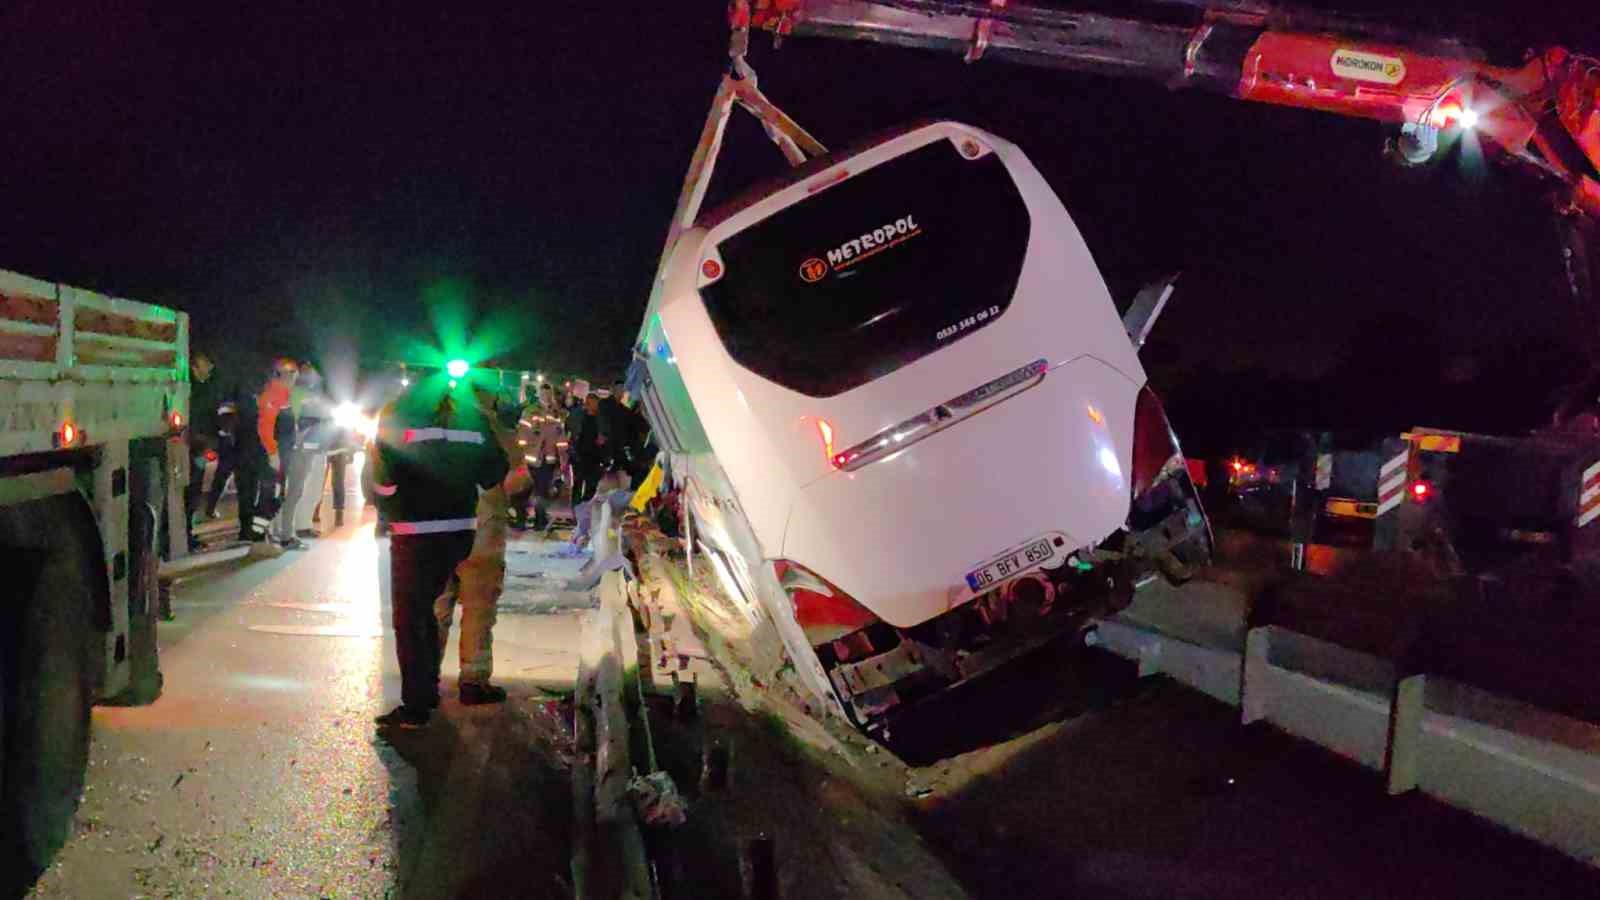 Bursa’daki otobüs kazasıyla ilgili ilk rapor çıktı